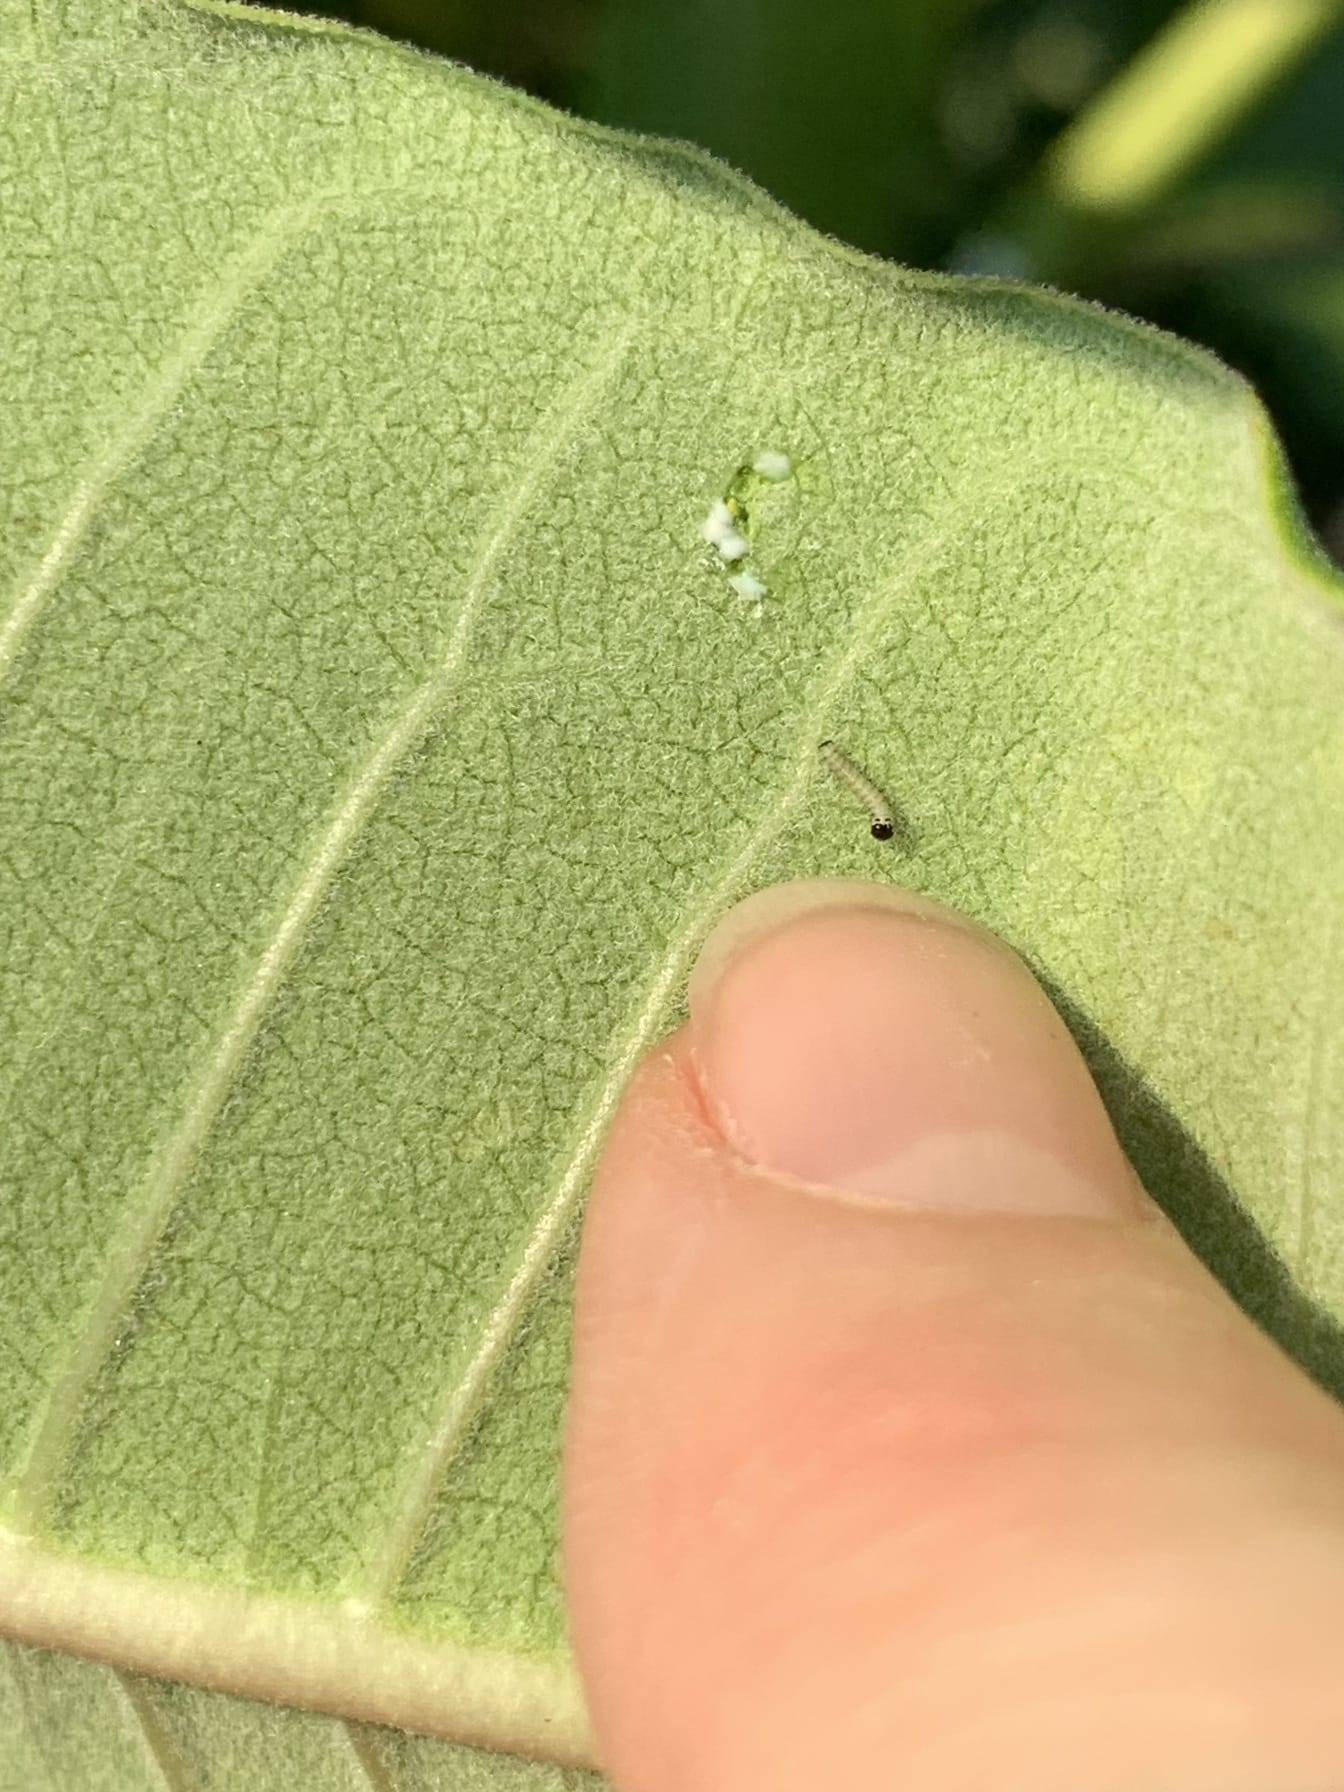 小帝王蝶毛虫在新孵化的乳草植物上